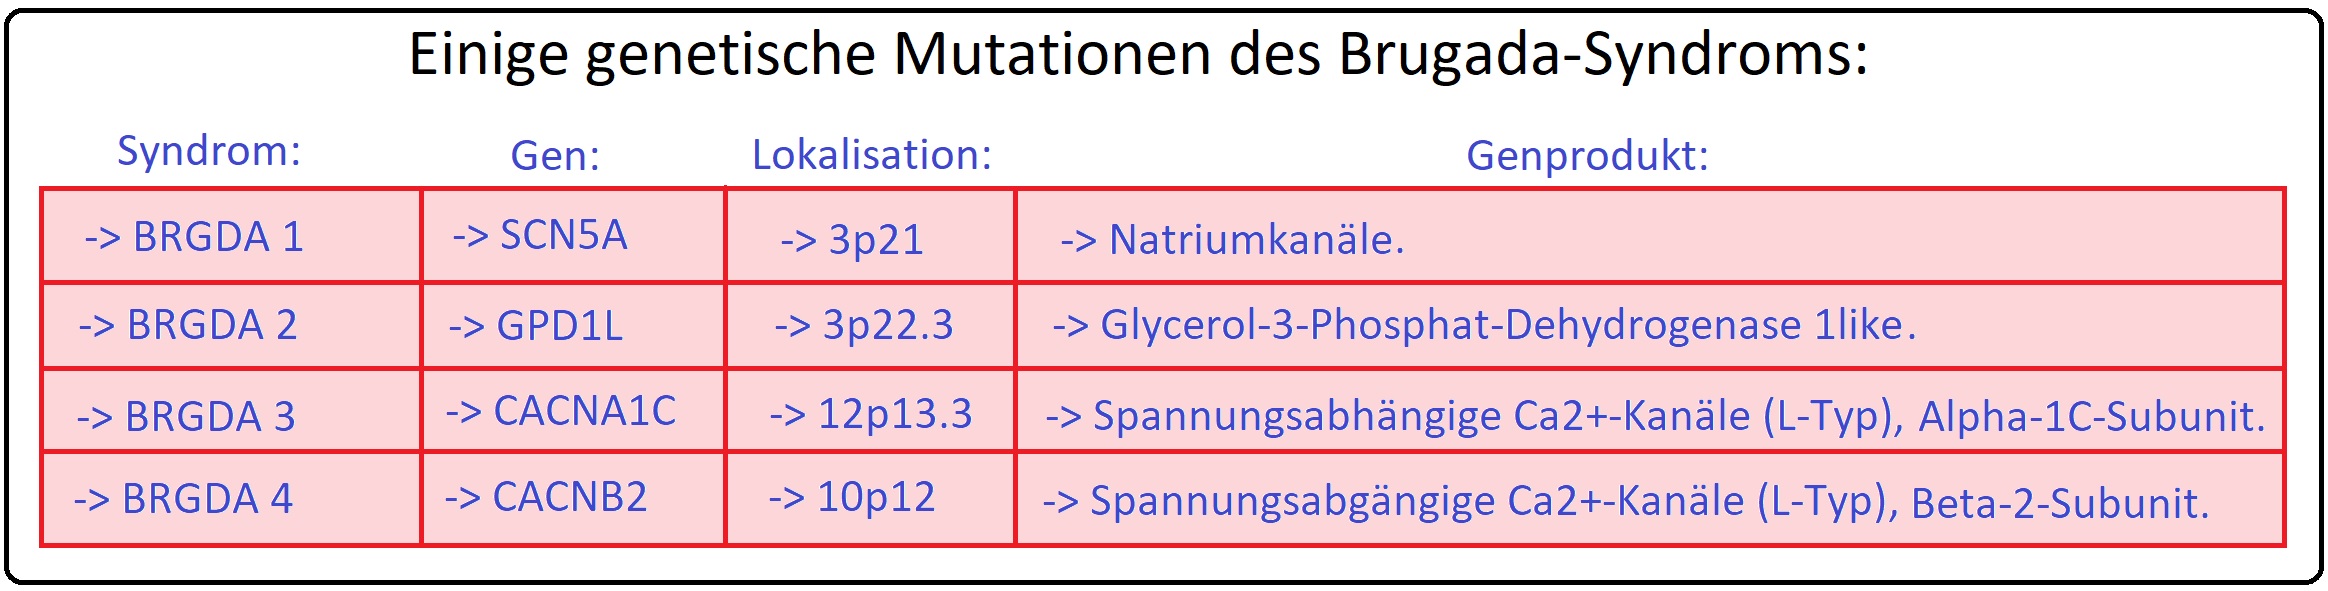 454 Einige genetische Mutationen des Brugada Syndroms